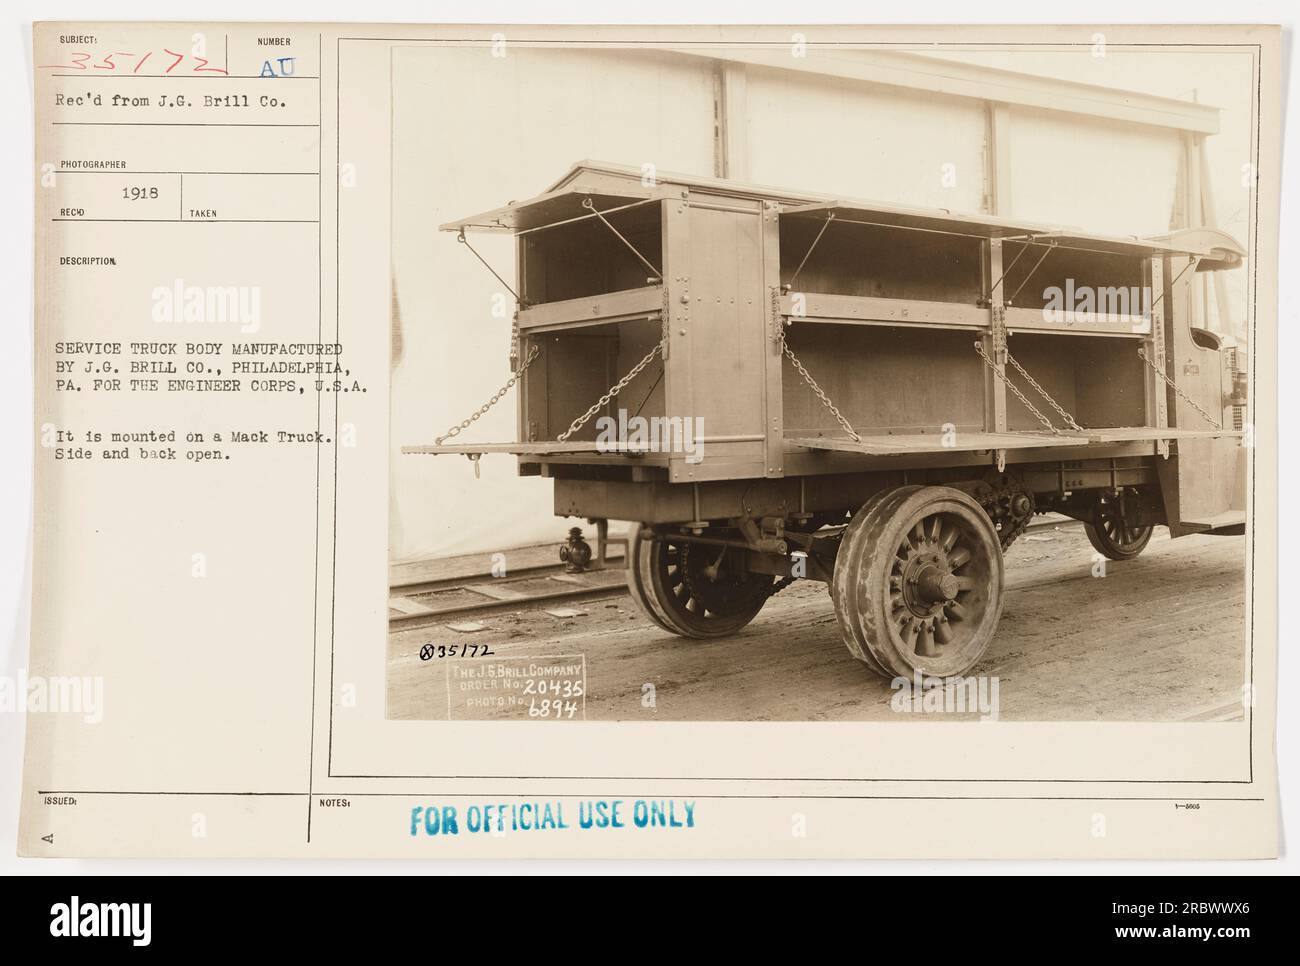 Ein Service-Lkw-Aufbau, der 1918 von J.G. hergestellt wurde Brill Co., Philadelphia, PA für das Ingenieurkorps der USA, montiert auf einem Mack Truck. Seite und Heck des Staplers sind offen. Dieses Foto wurde nur für den offiziellen Gebrauch aufgenommen und ist mit der Bestellnummer 20435 gekennzeichnet. Stockfoto